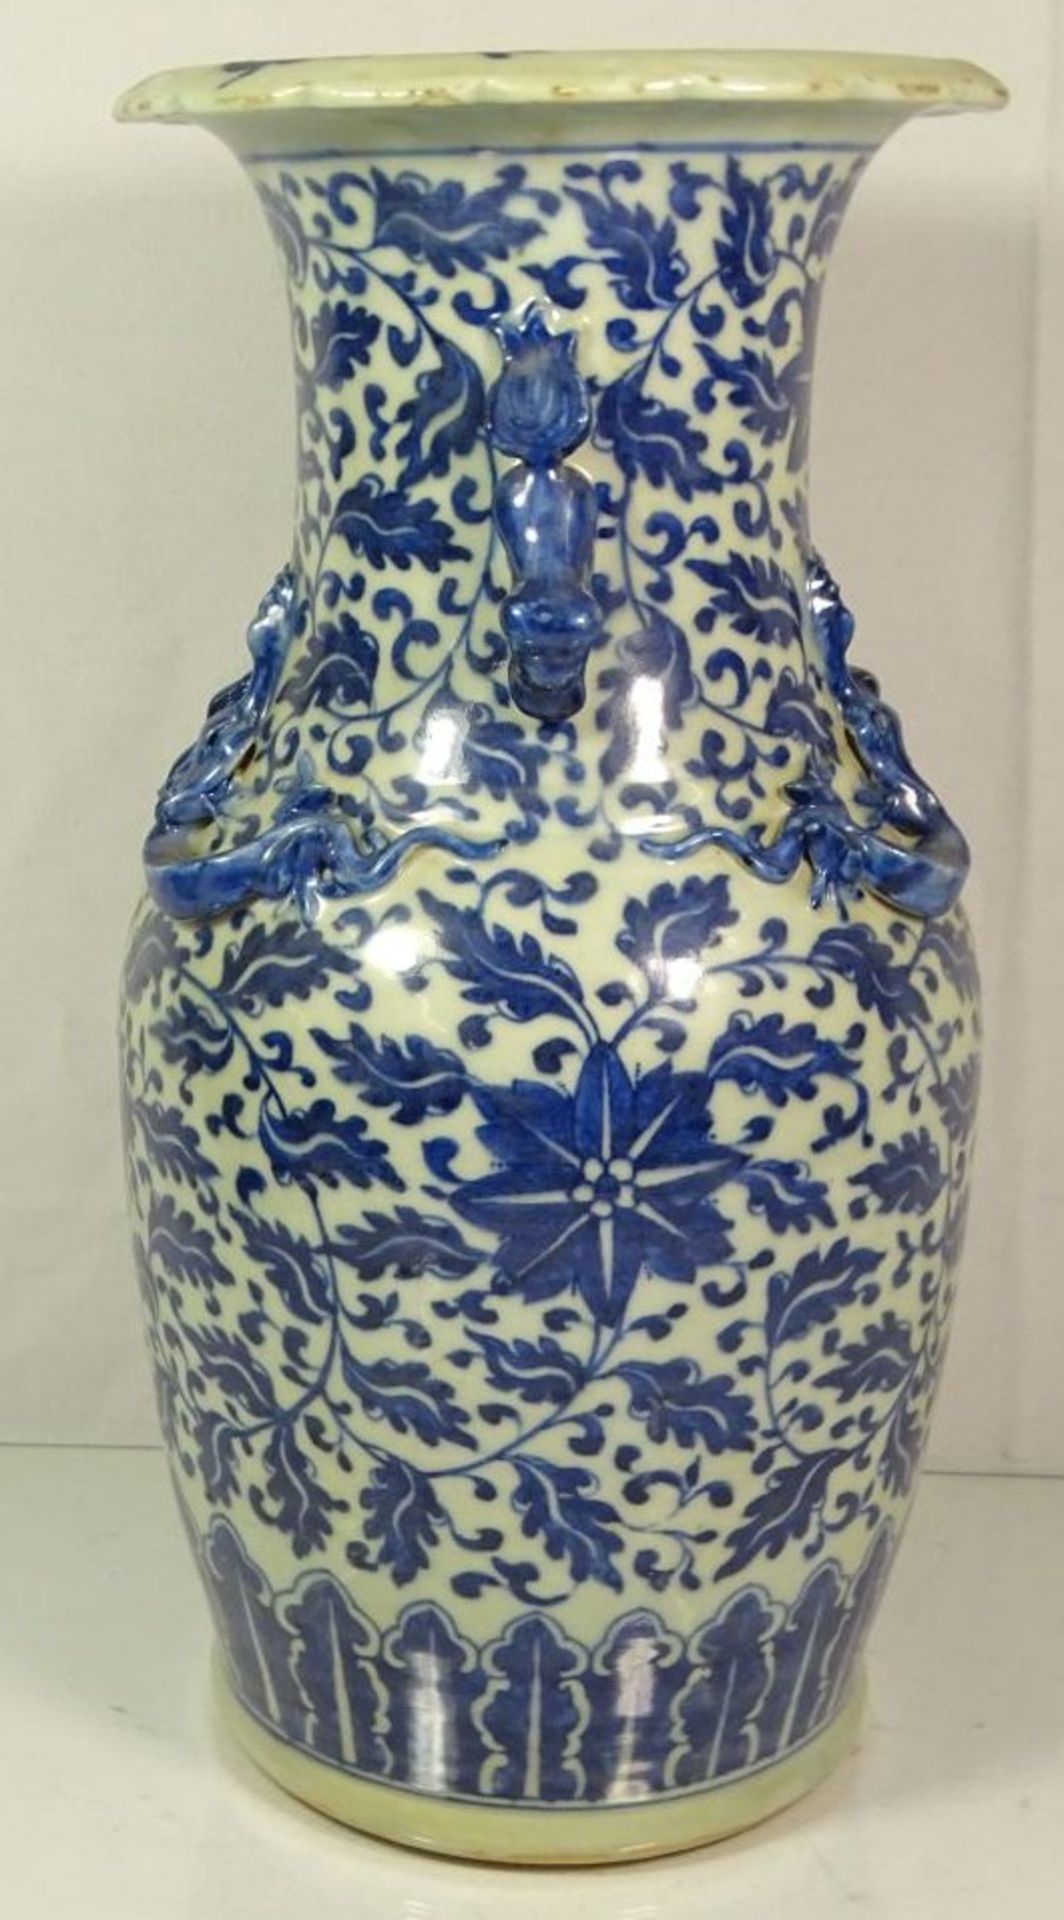 hohe Vase, wohl China, Löwen als Handhaben, sowie plast. Echsen, blaues Dekor, 1x Echse bestossen - Bild 2 aus 8